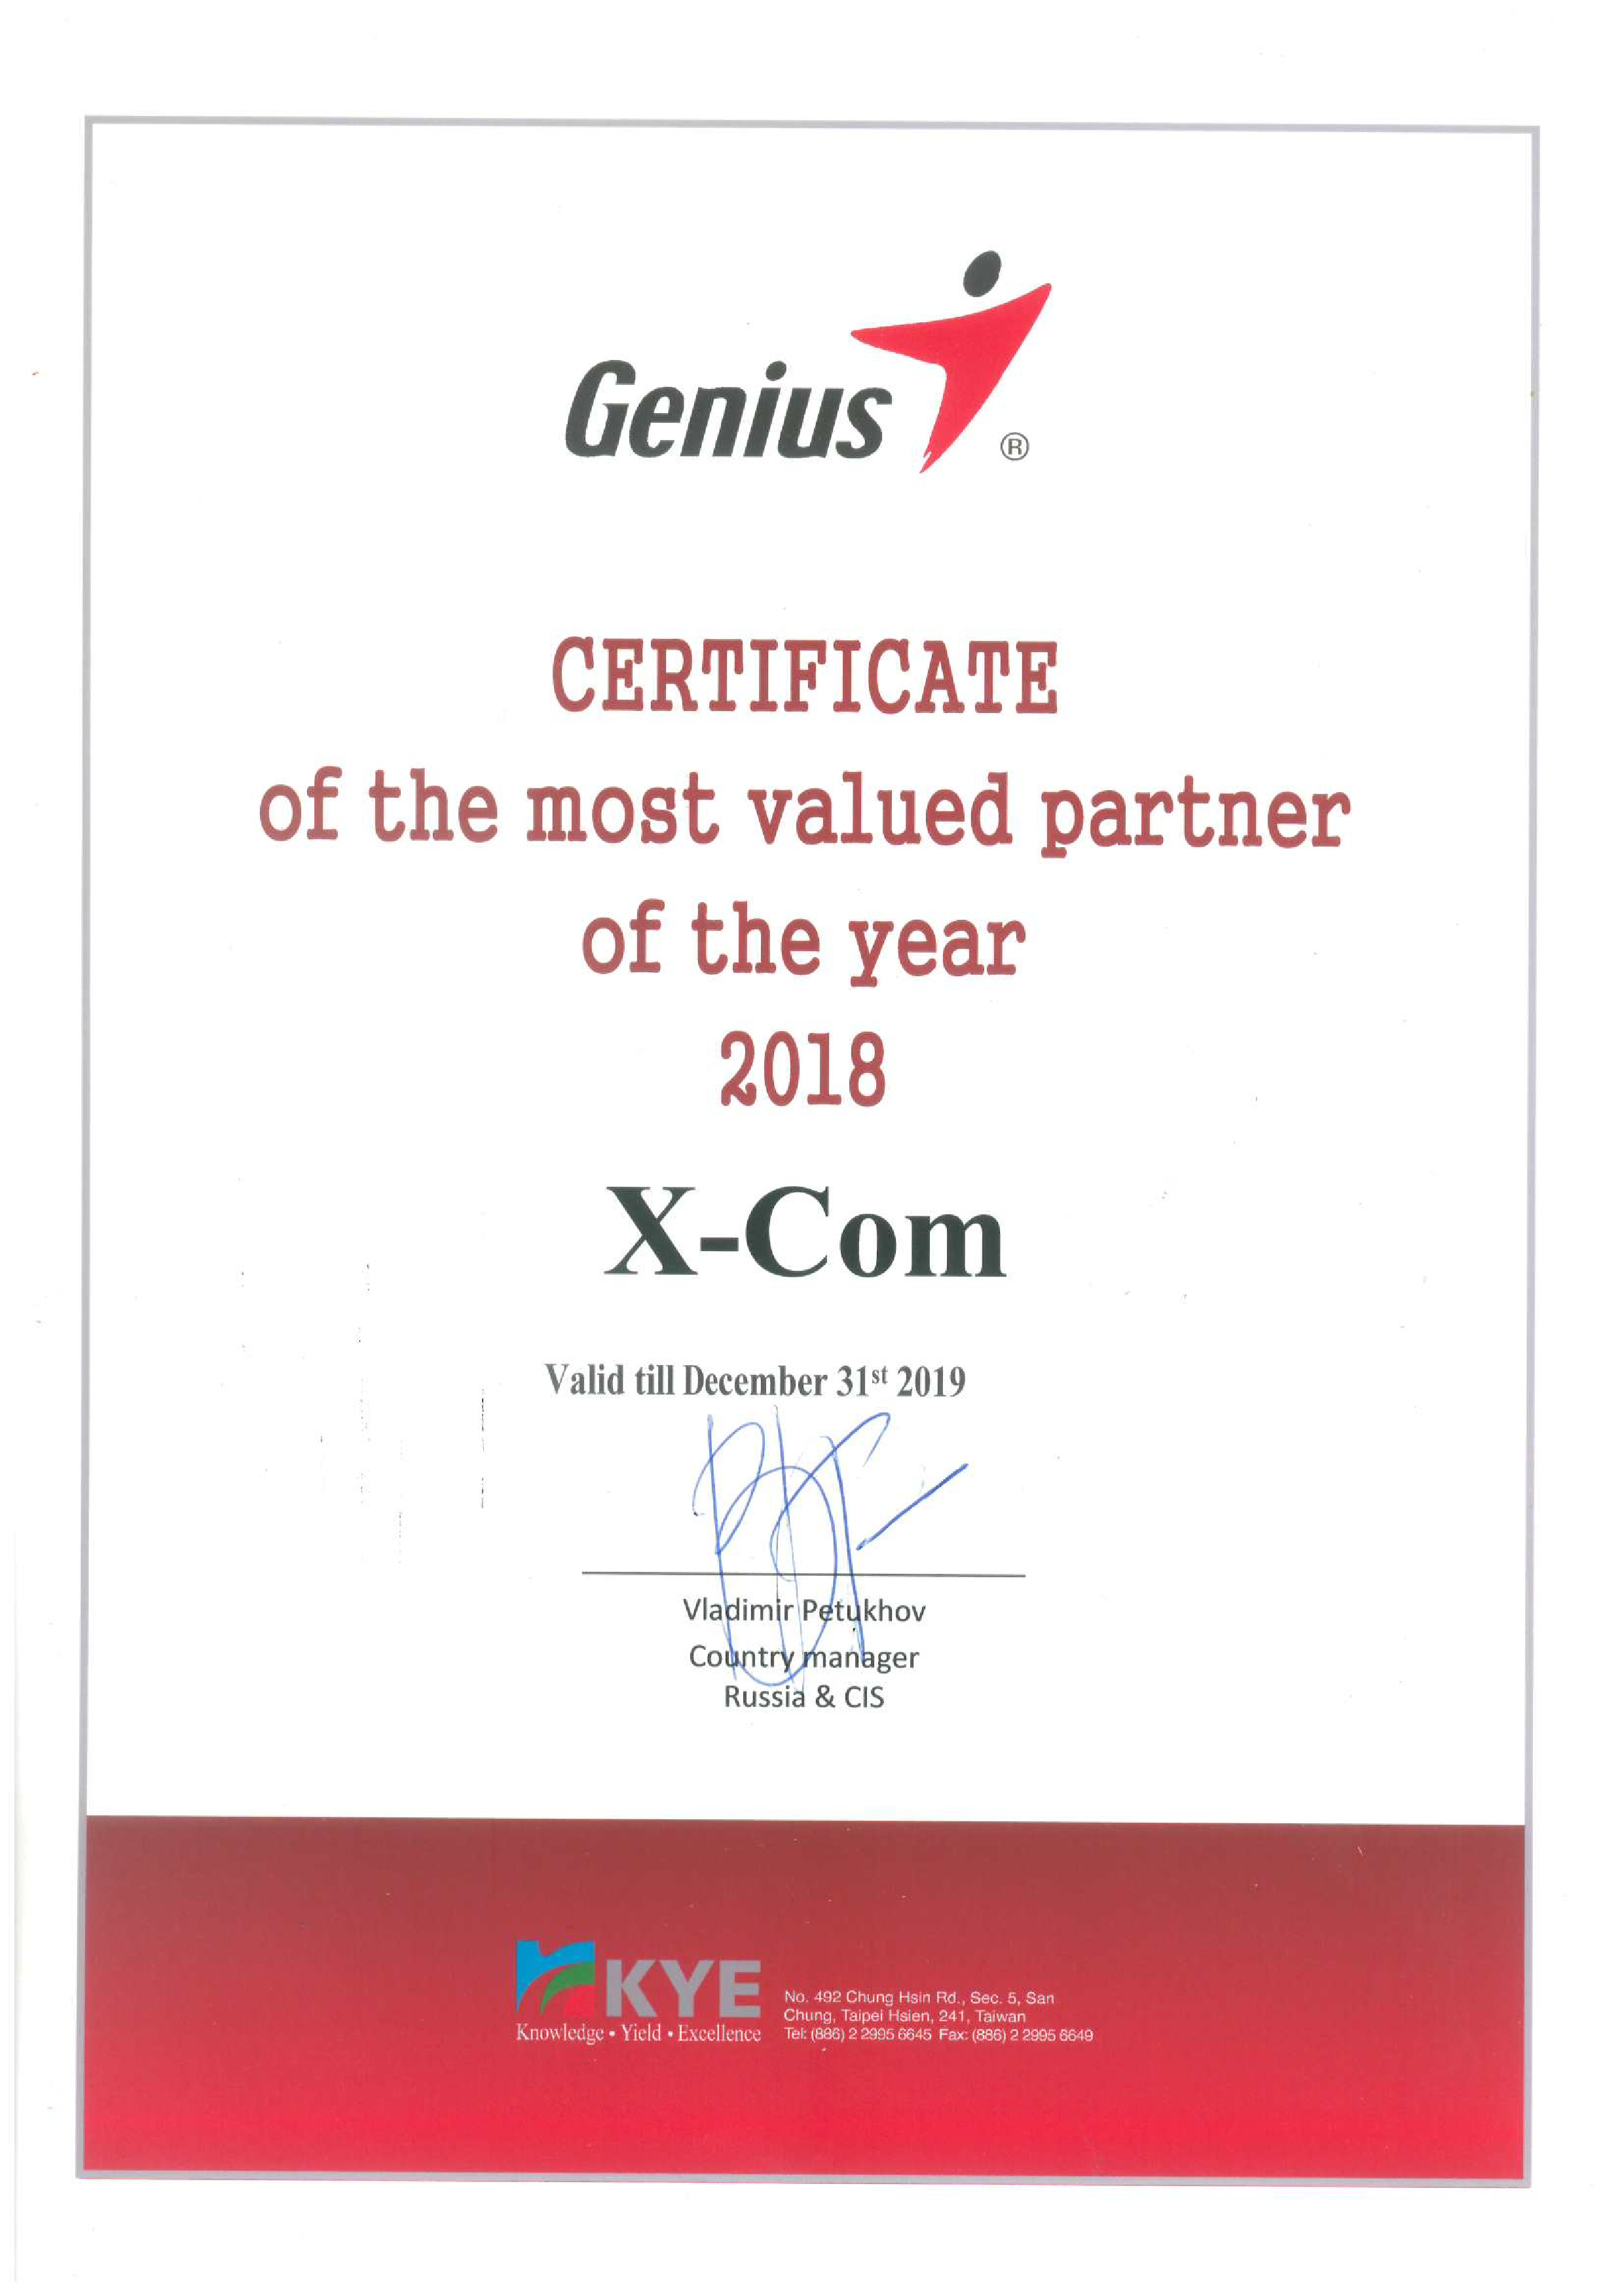 Компания Genius подвела итоги работы в 2018 году и признала X-Com наиболее ценным российским партнером